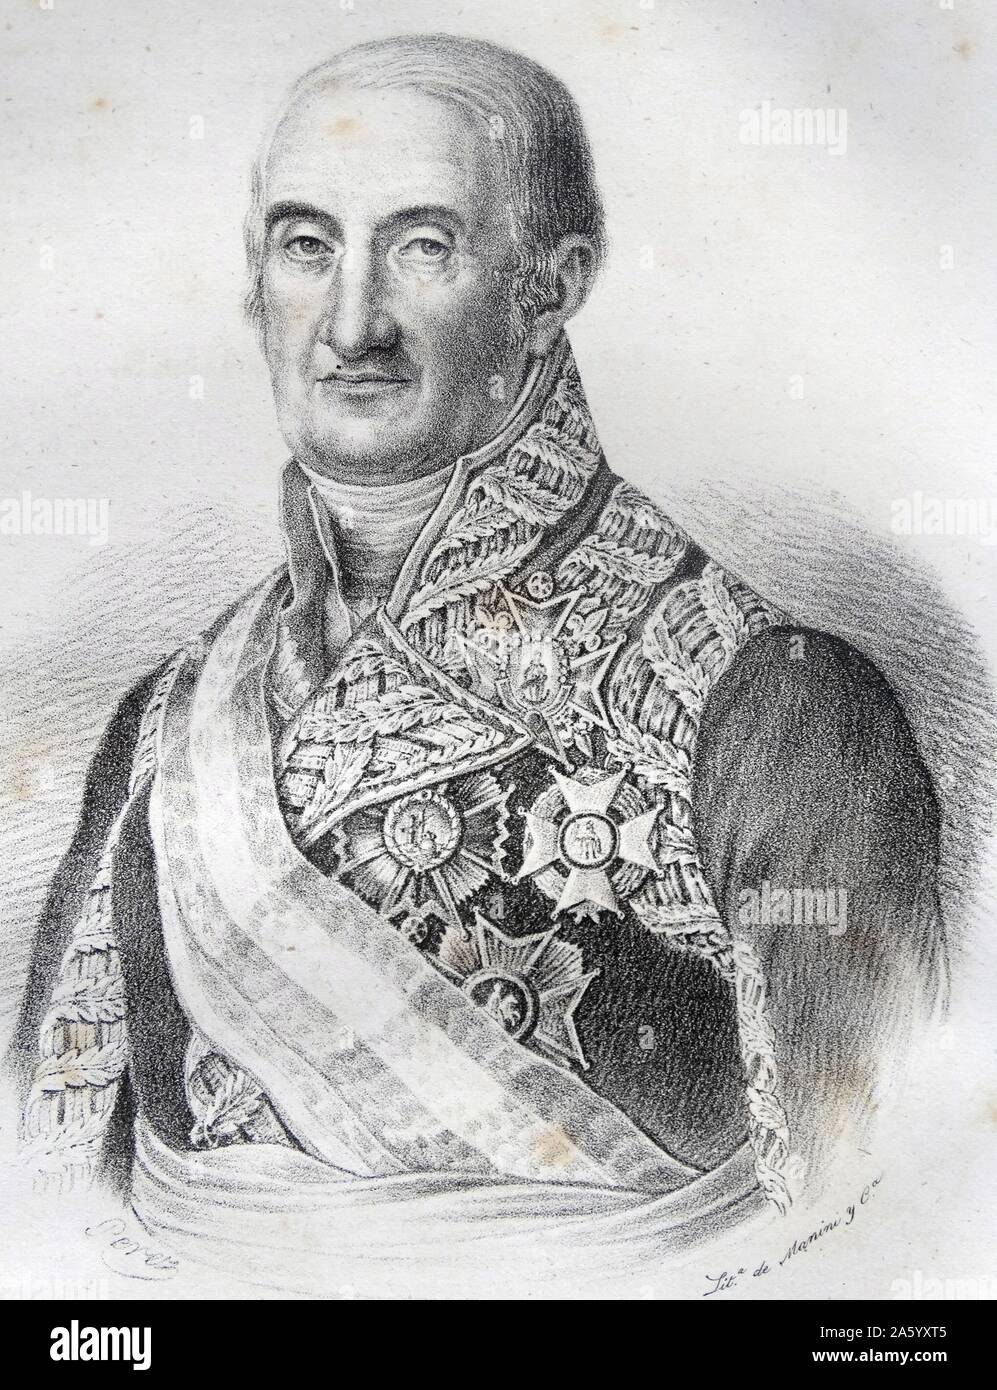 Portrait du général Francisco Javier Castaños, 1 Duc de Bailén (1758-1852) général espagnol pendant la guerre d'Espagne. Datée 1842 Banque D'Images